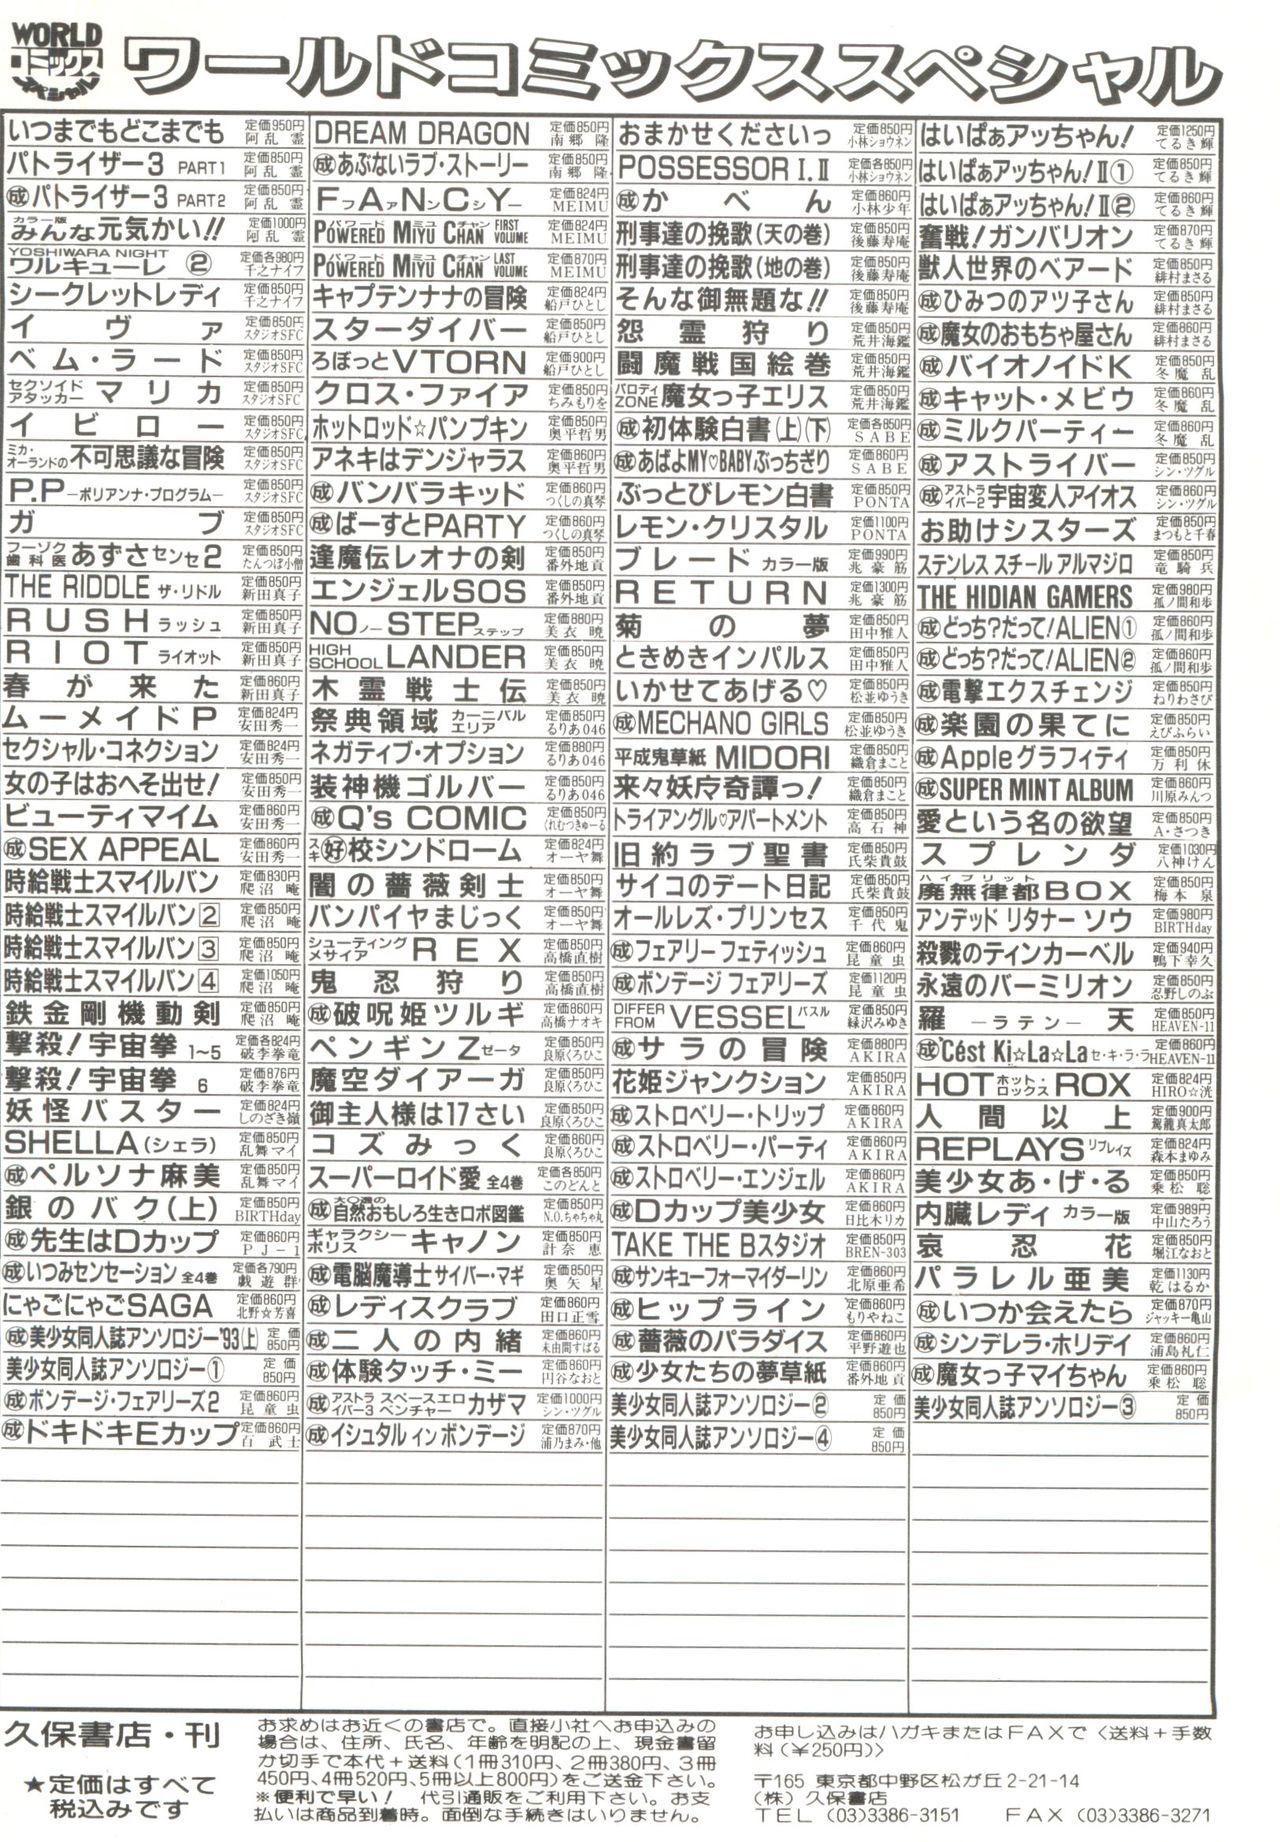 Bishoujo Doujinshi Anthology 4 147